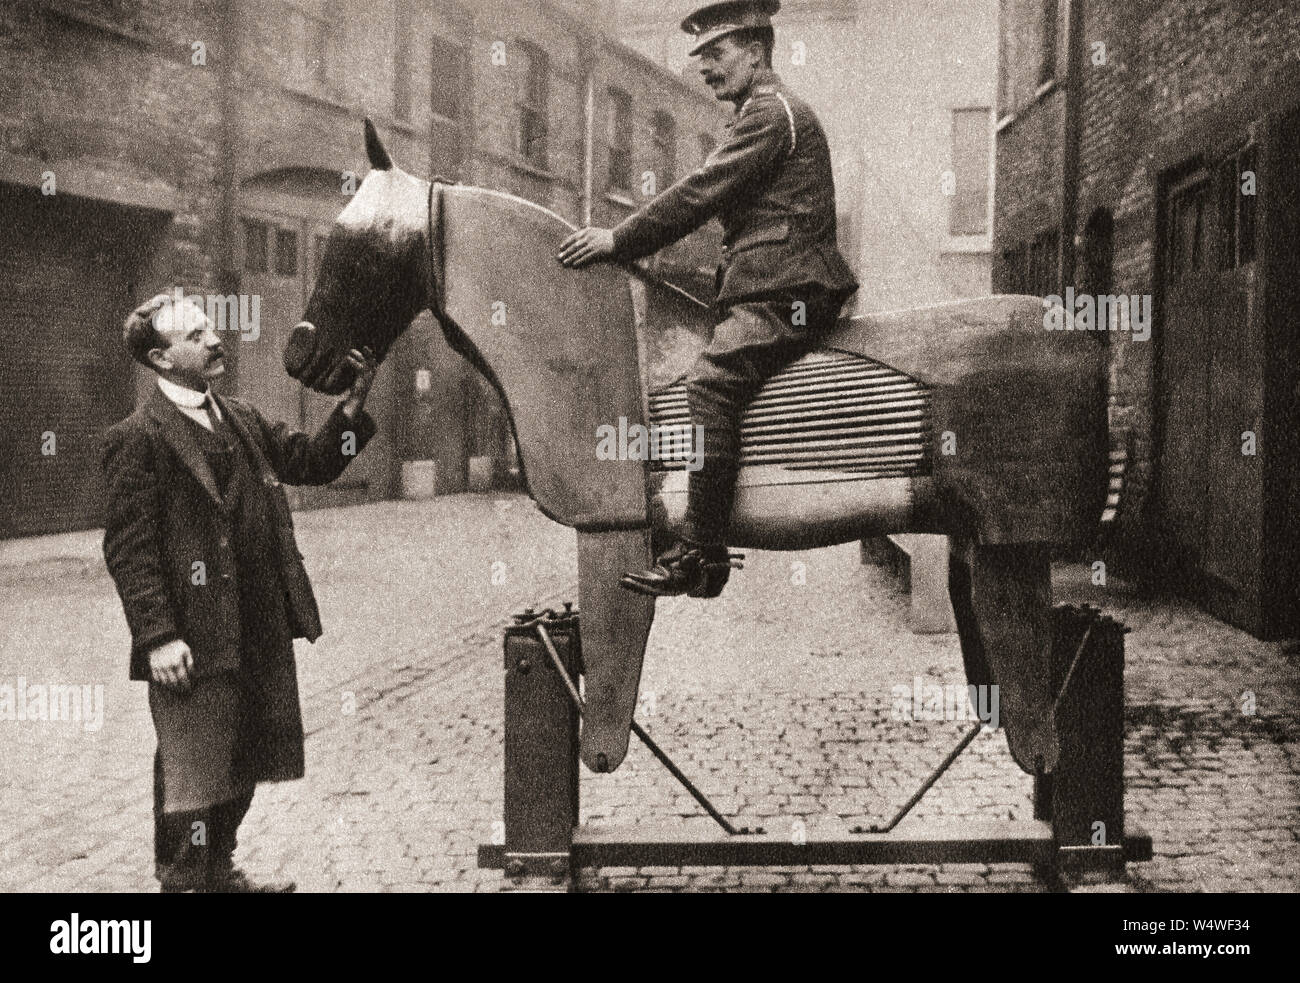 Ausbildung Rekruten die Grundlagen des Reitens auf blinden Pferden zu Beginn des Ersten Weltkriegs im Jahr 1914. Aus dem Festzug des Jahrhunderts, veröffentlicht 1934. Stockfoto